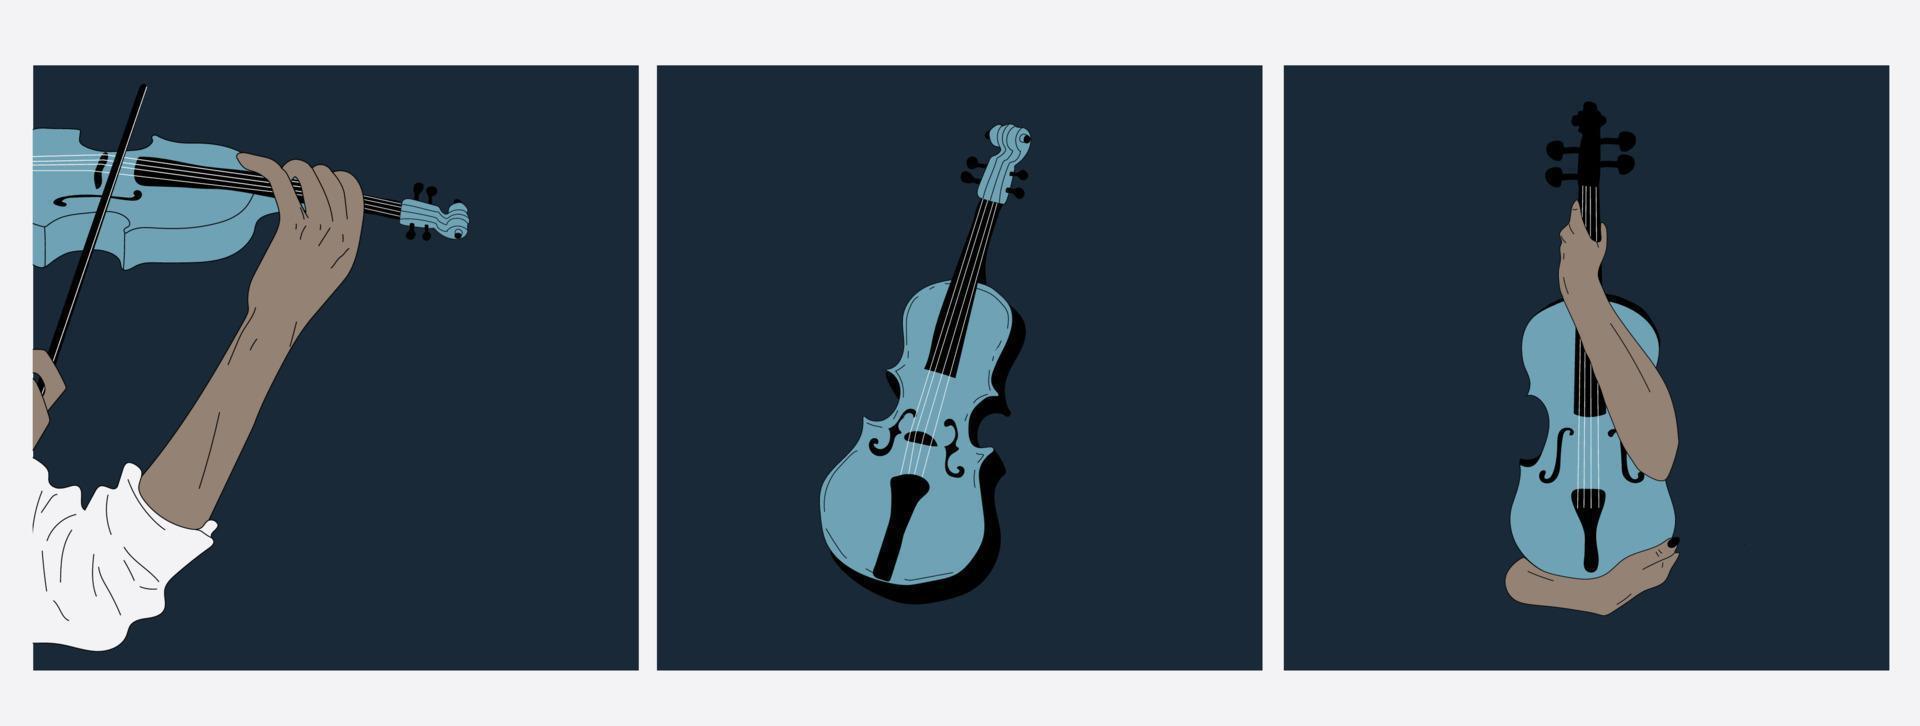 reeks van drie poster idee voor muziek- evenement, met symbolen van de viool instrument. banier, folder, uitnodiging, ticket of reclame banier met abstract viool. vlak vector illustratie.